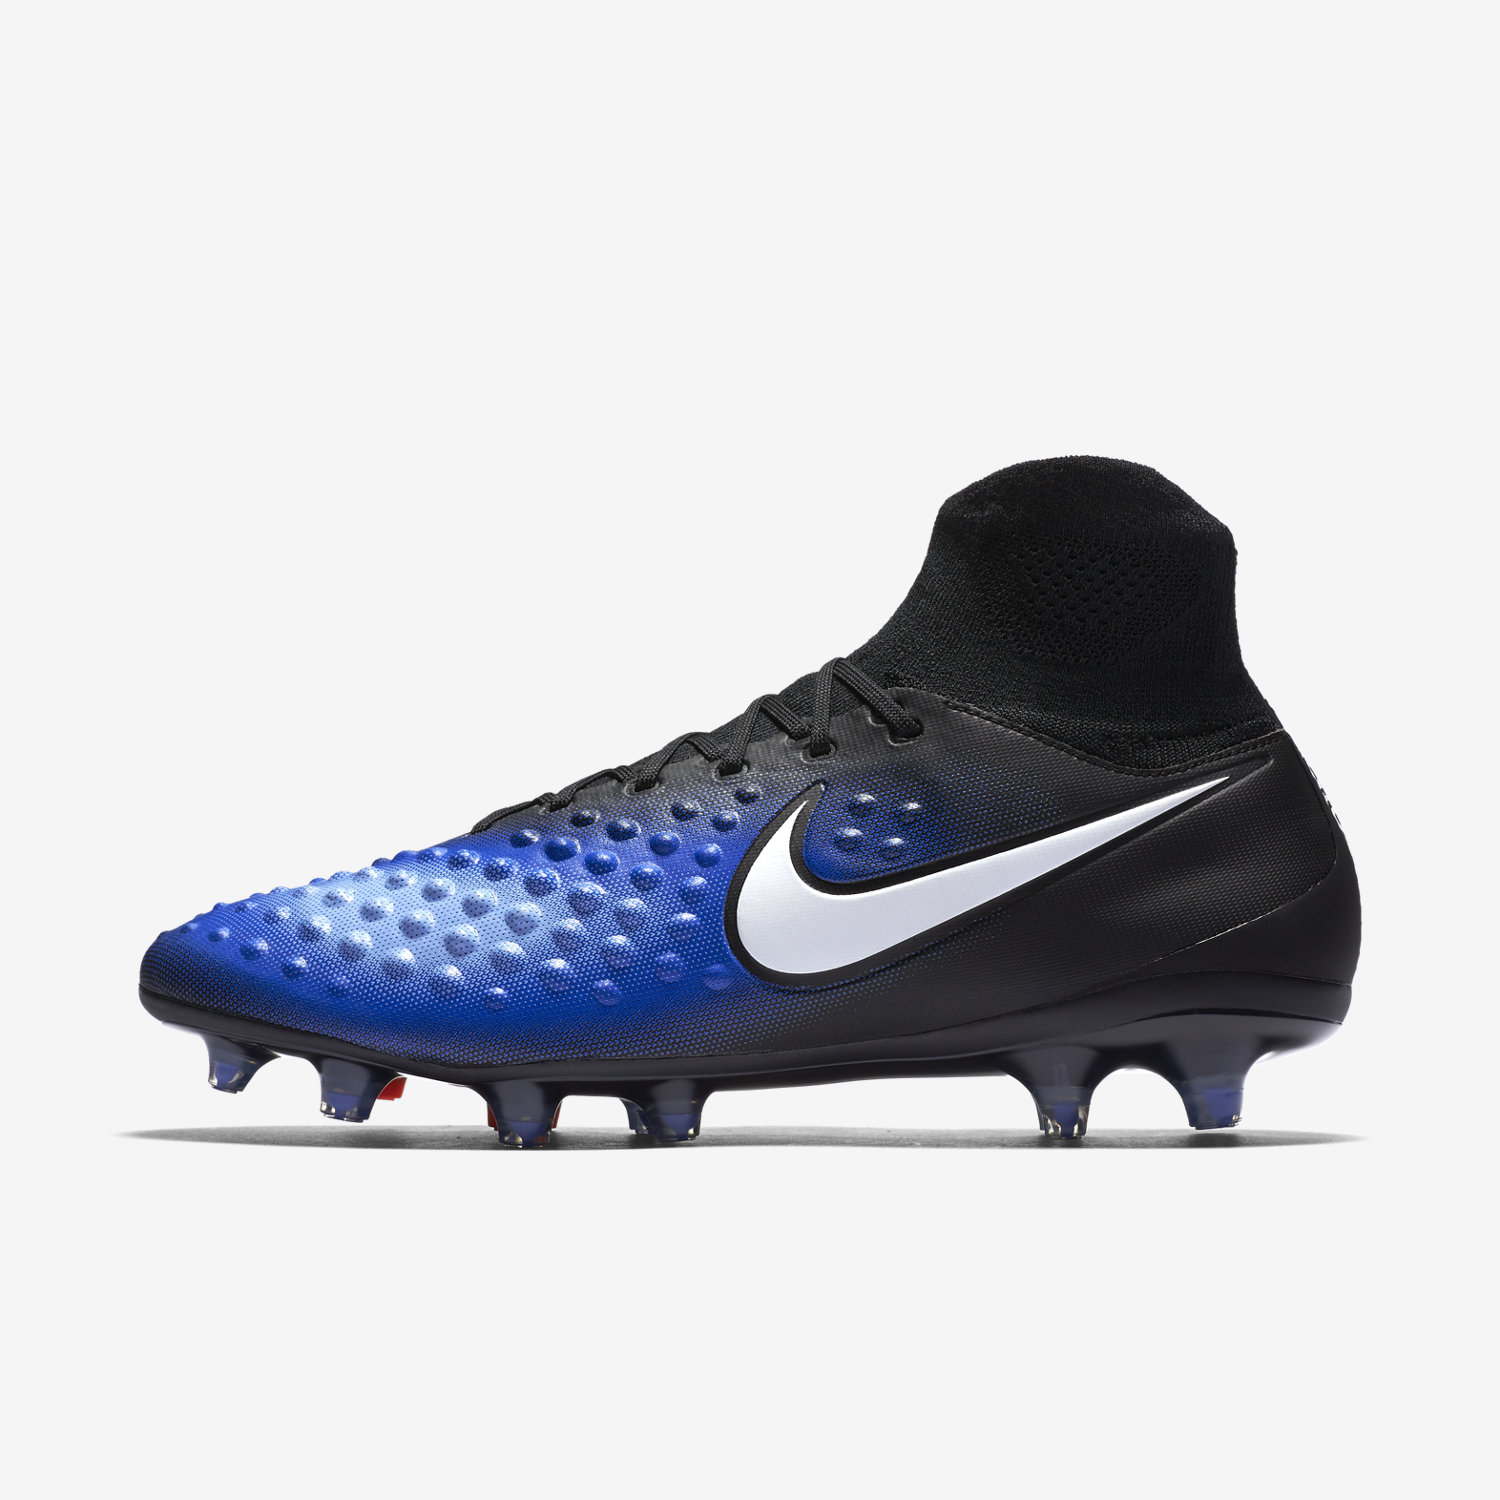 ποδοσφαιρικα παπουτσια ανδρικα Nike Magista Orden II FG μαυρα/μπλε/ασπρα 60526123OV